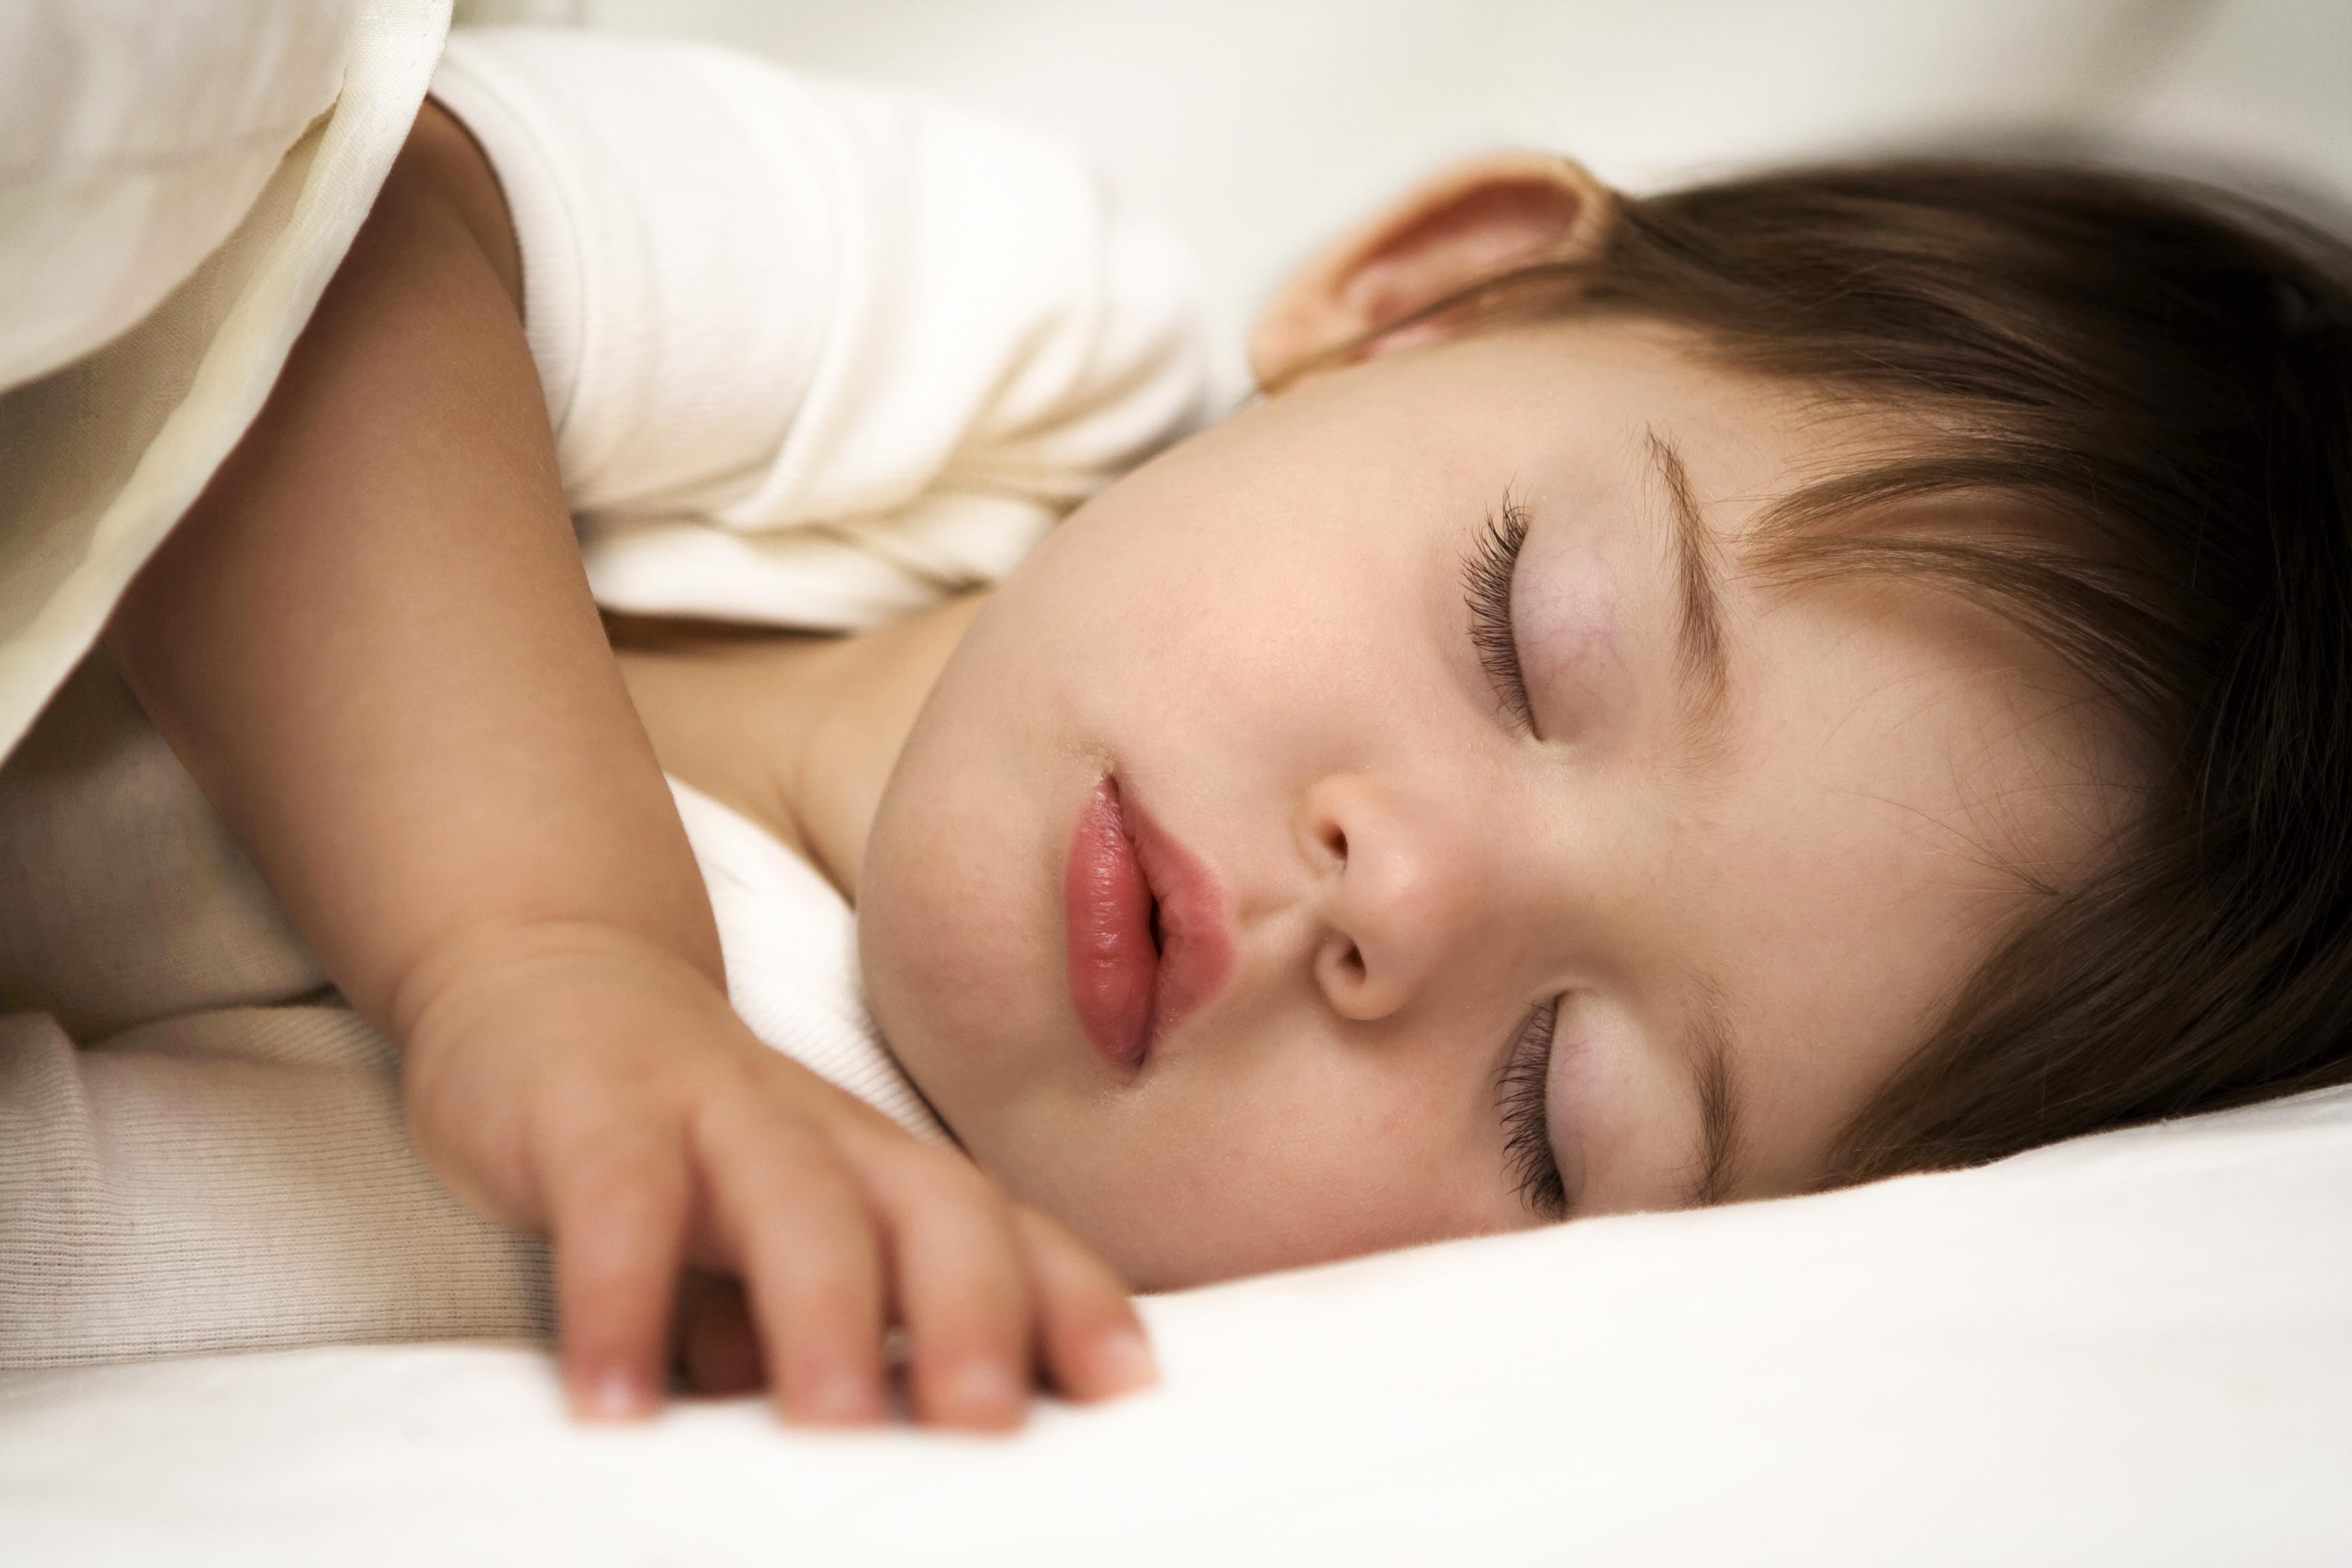 Los niños crecen más en vacaciones porque duermen más: Expertos. Foto: Tomada de Internet.